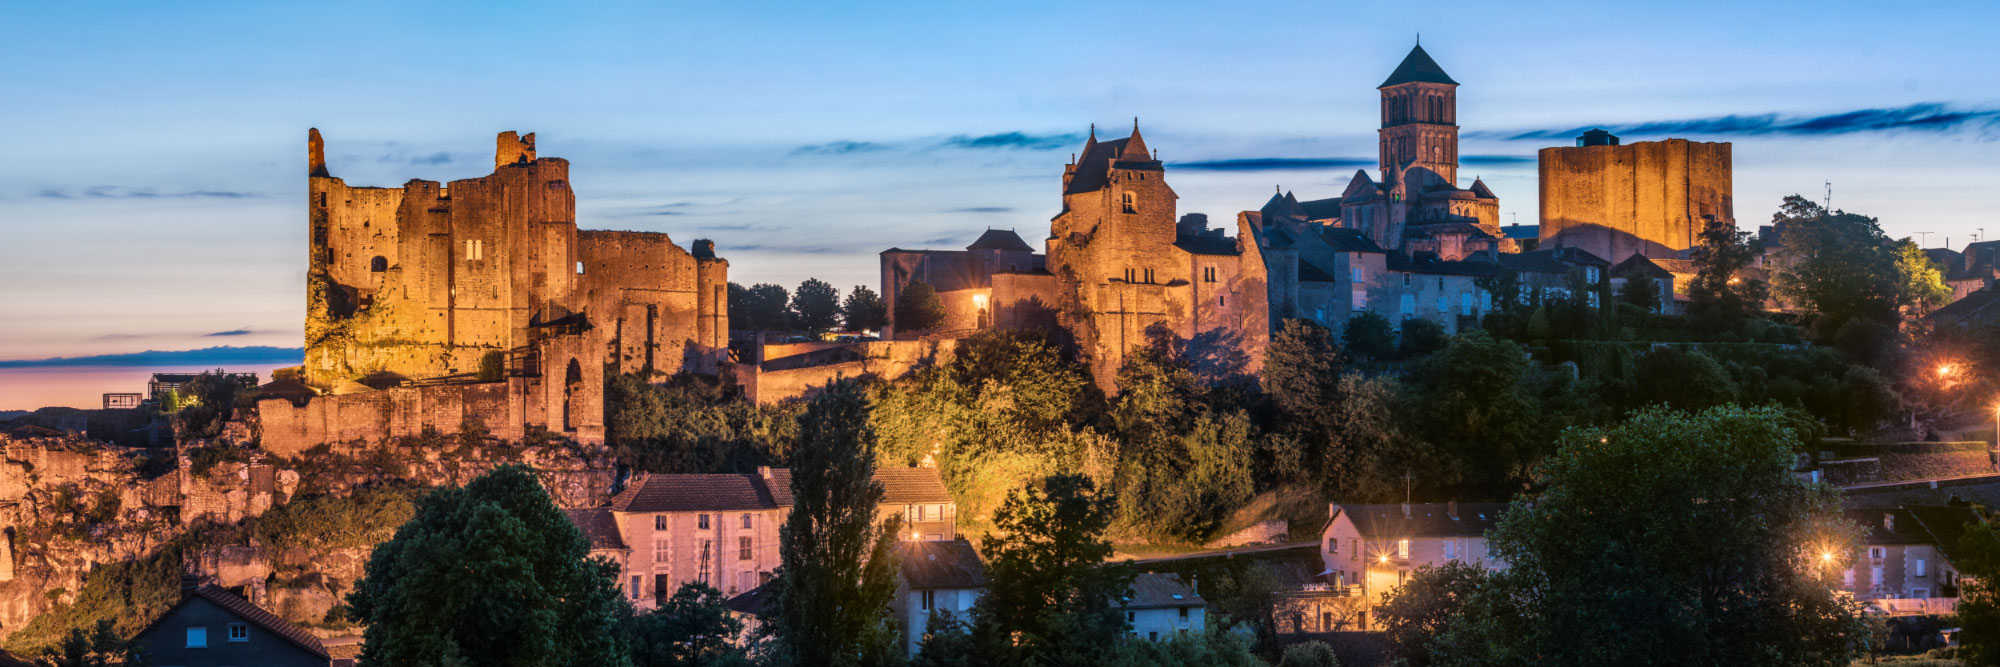 Les châteaux médiévaux et la Collégiale Saint Pierre, Ville Haute de Chauvigny